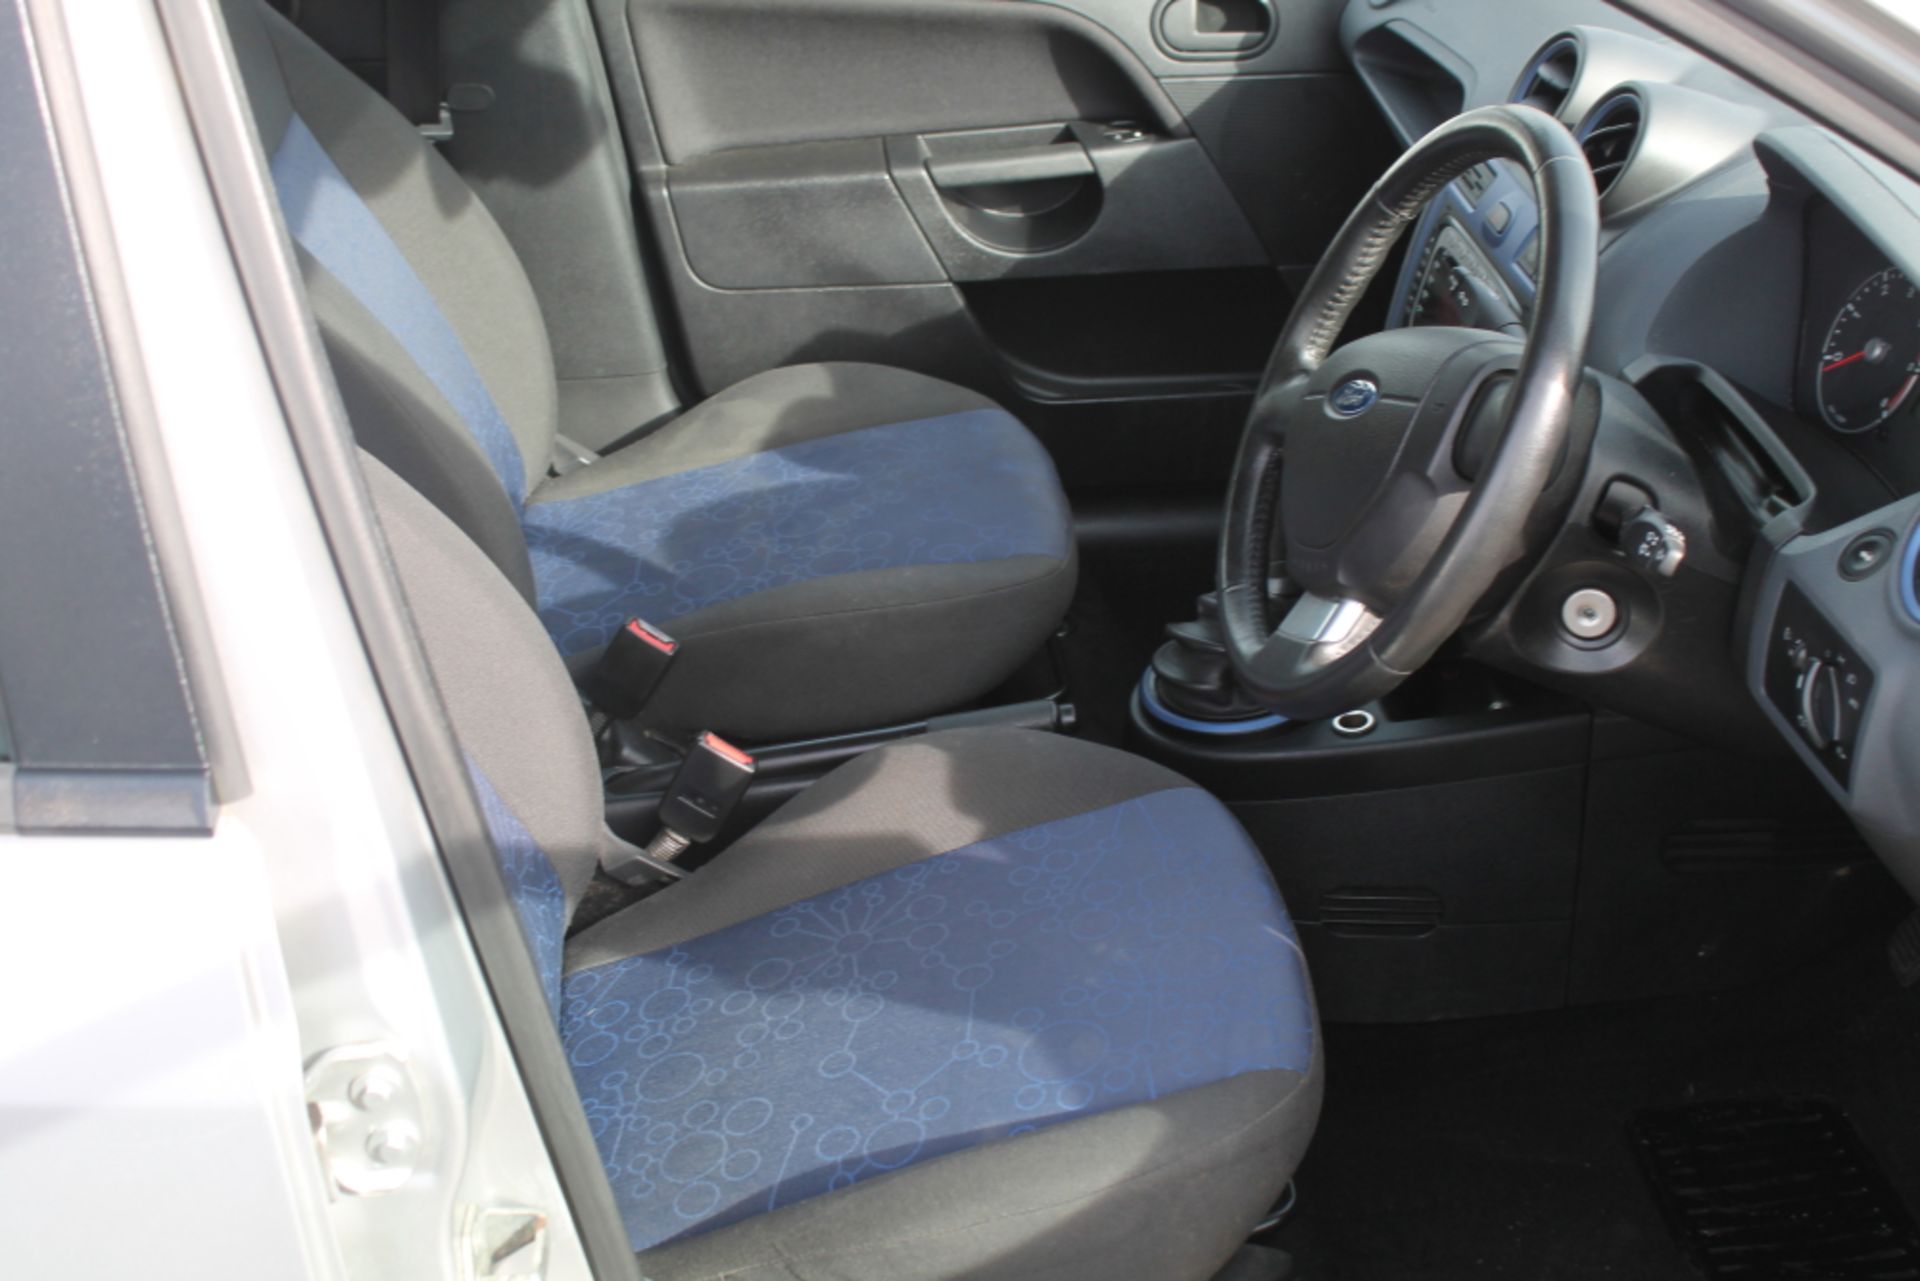 Ford Fiesta Zetec Blue Tdci - 1399cc 5 Door - Image 6 of 10